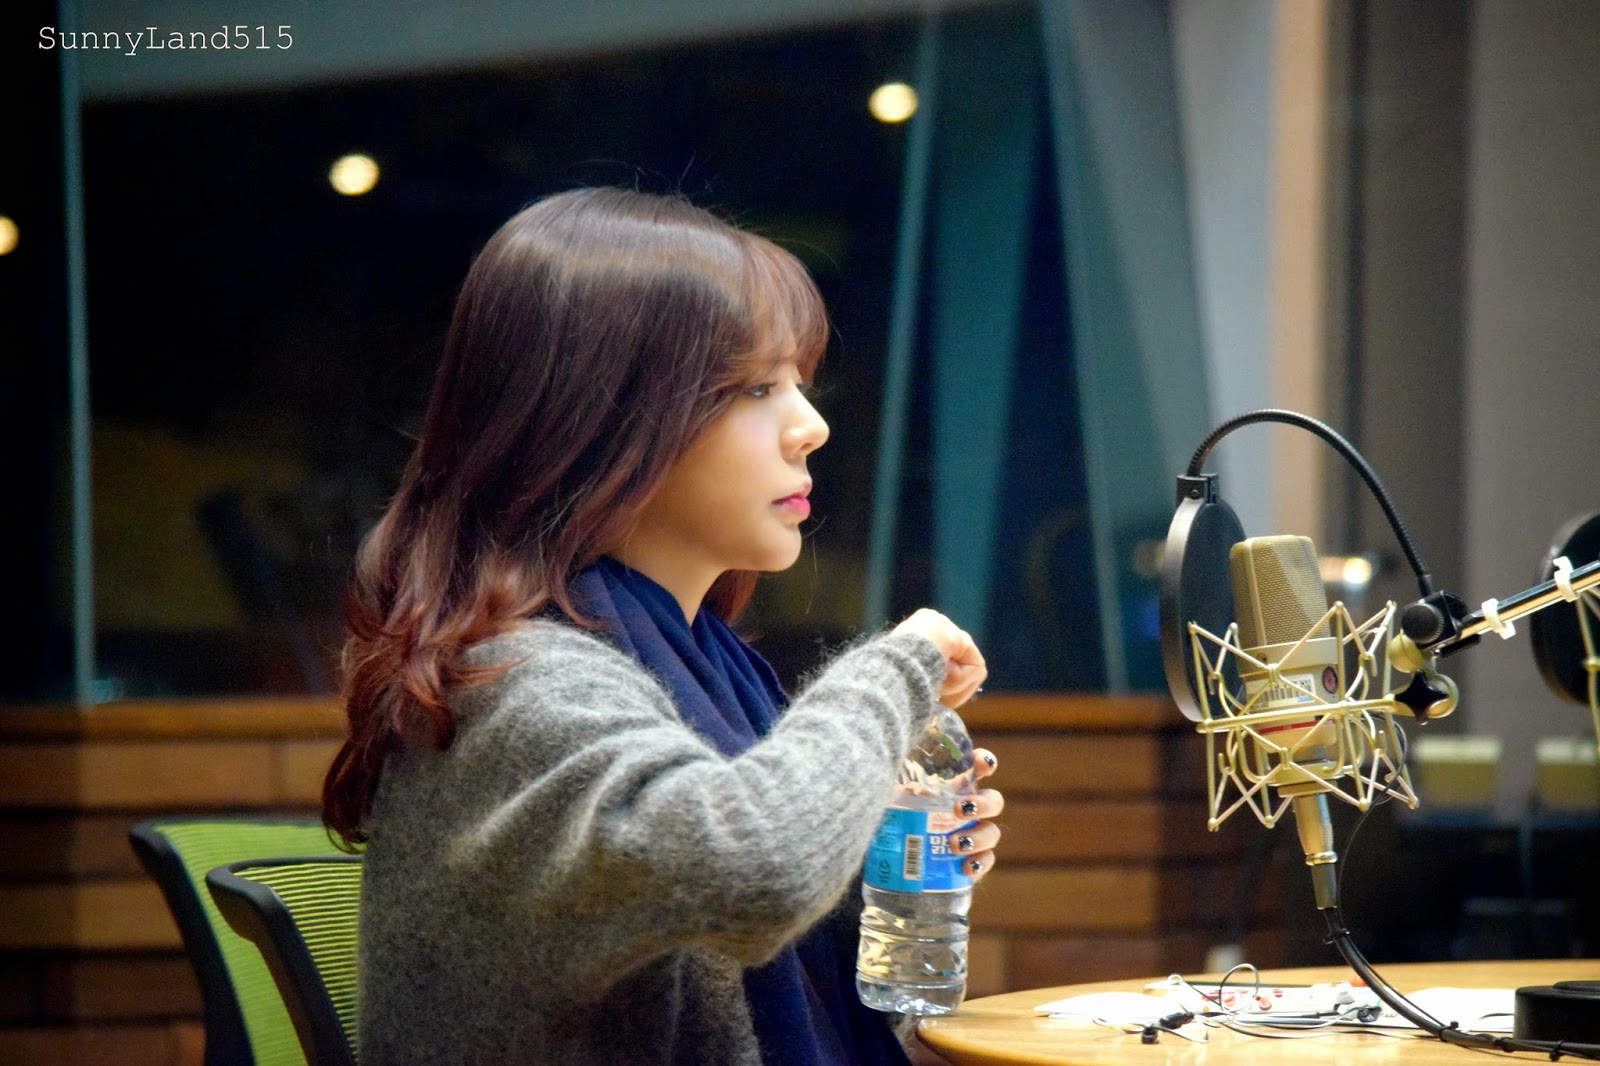 [OTHER][06-02-2015]Hình ảnh mới nhất từ DJ Sunny tại Radio MBC FM4U - "FM Date" - Page 10 DSC_0023_Fotor